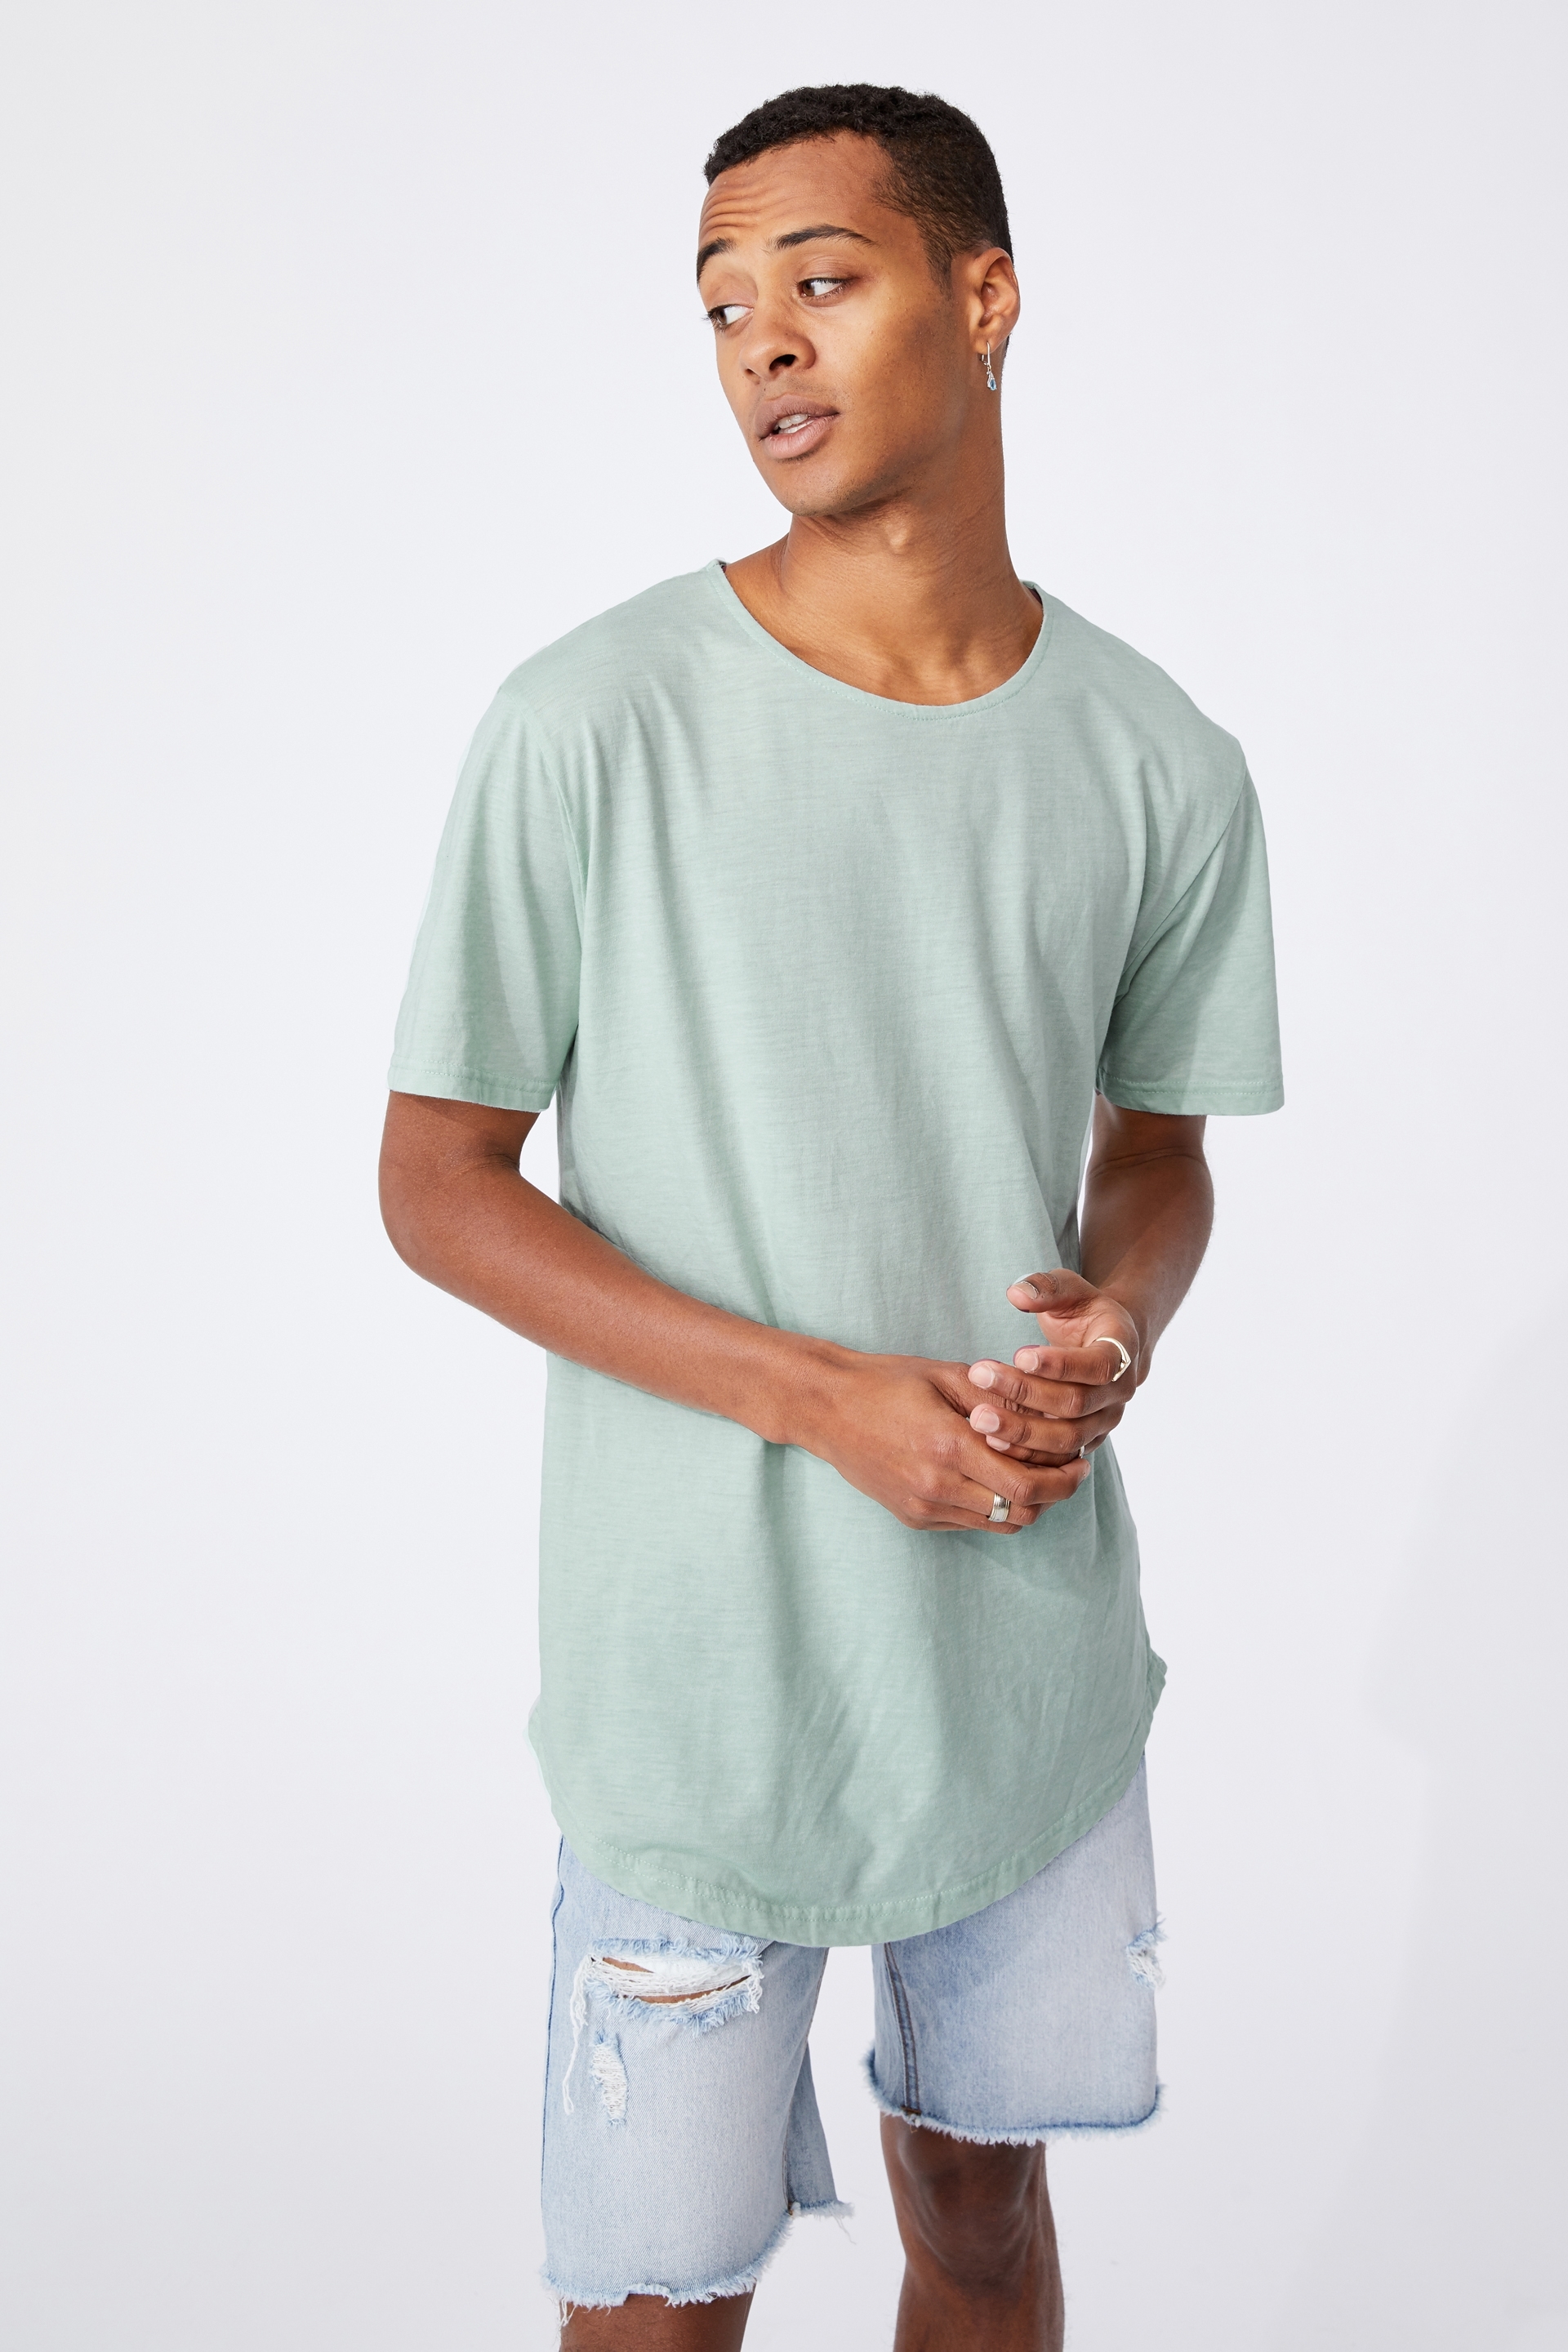 Cotton On Men - Longline Scoop Burnout T-Shirt - Mist blue